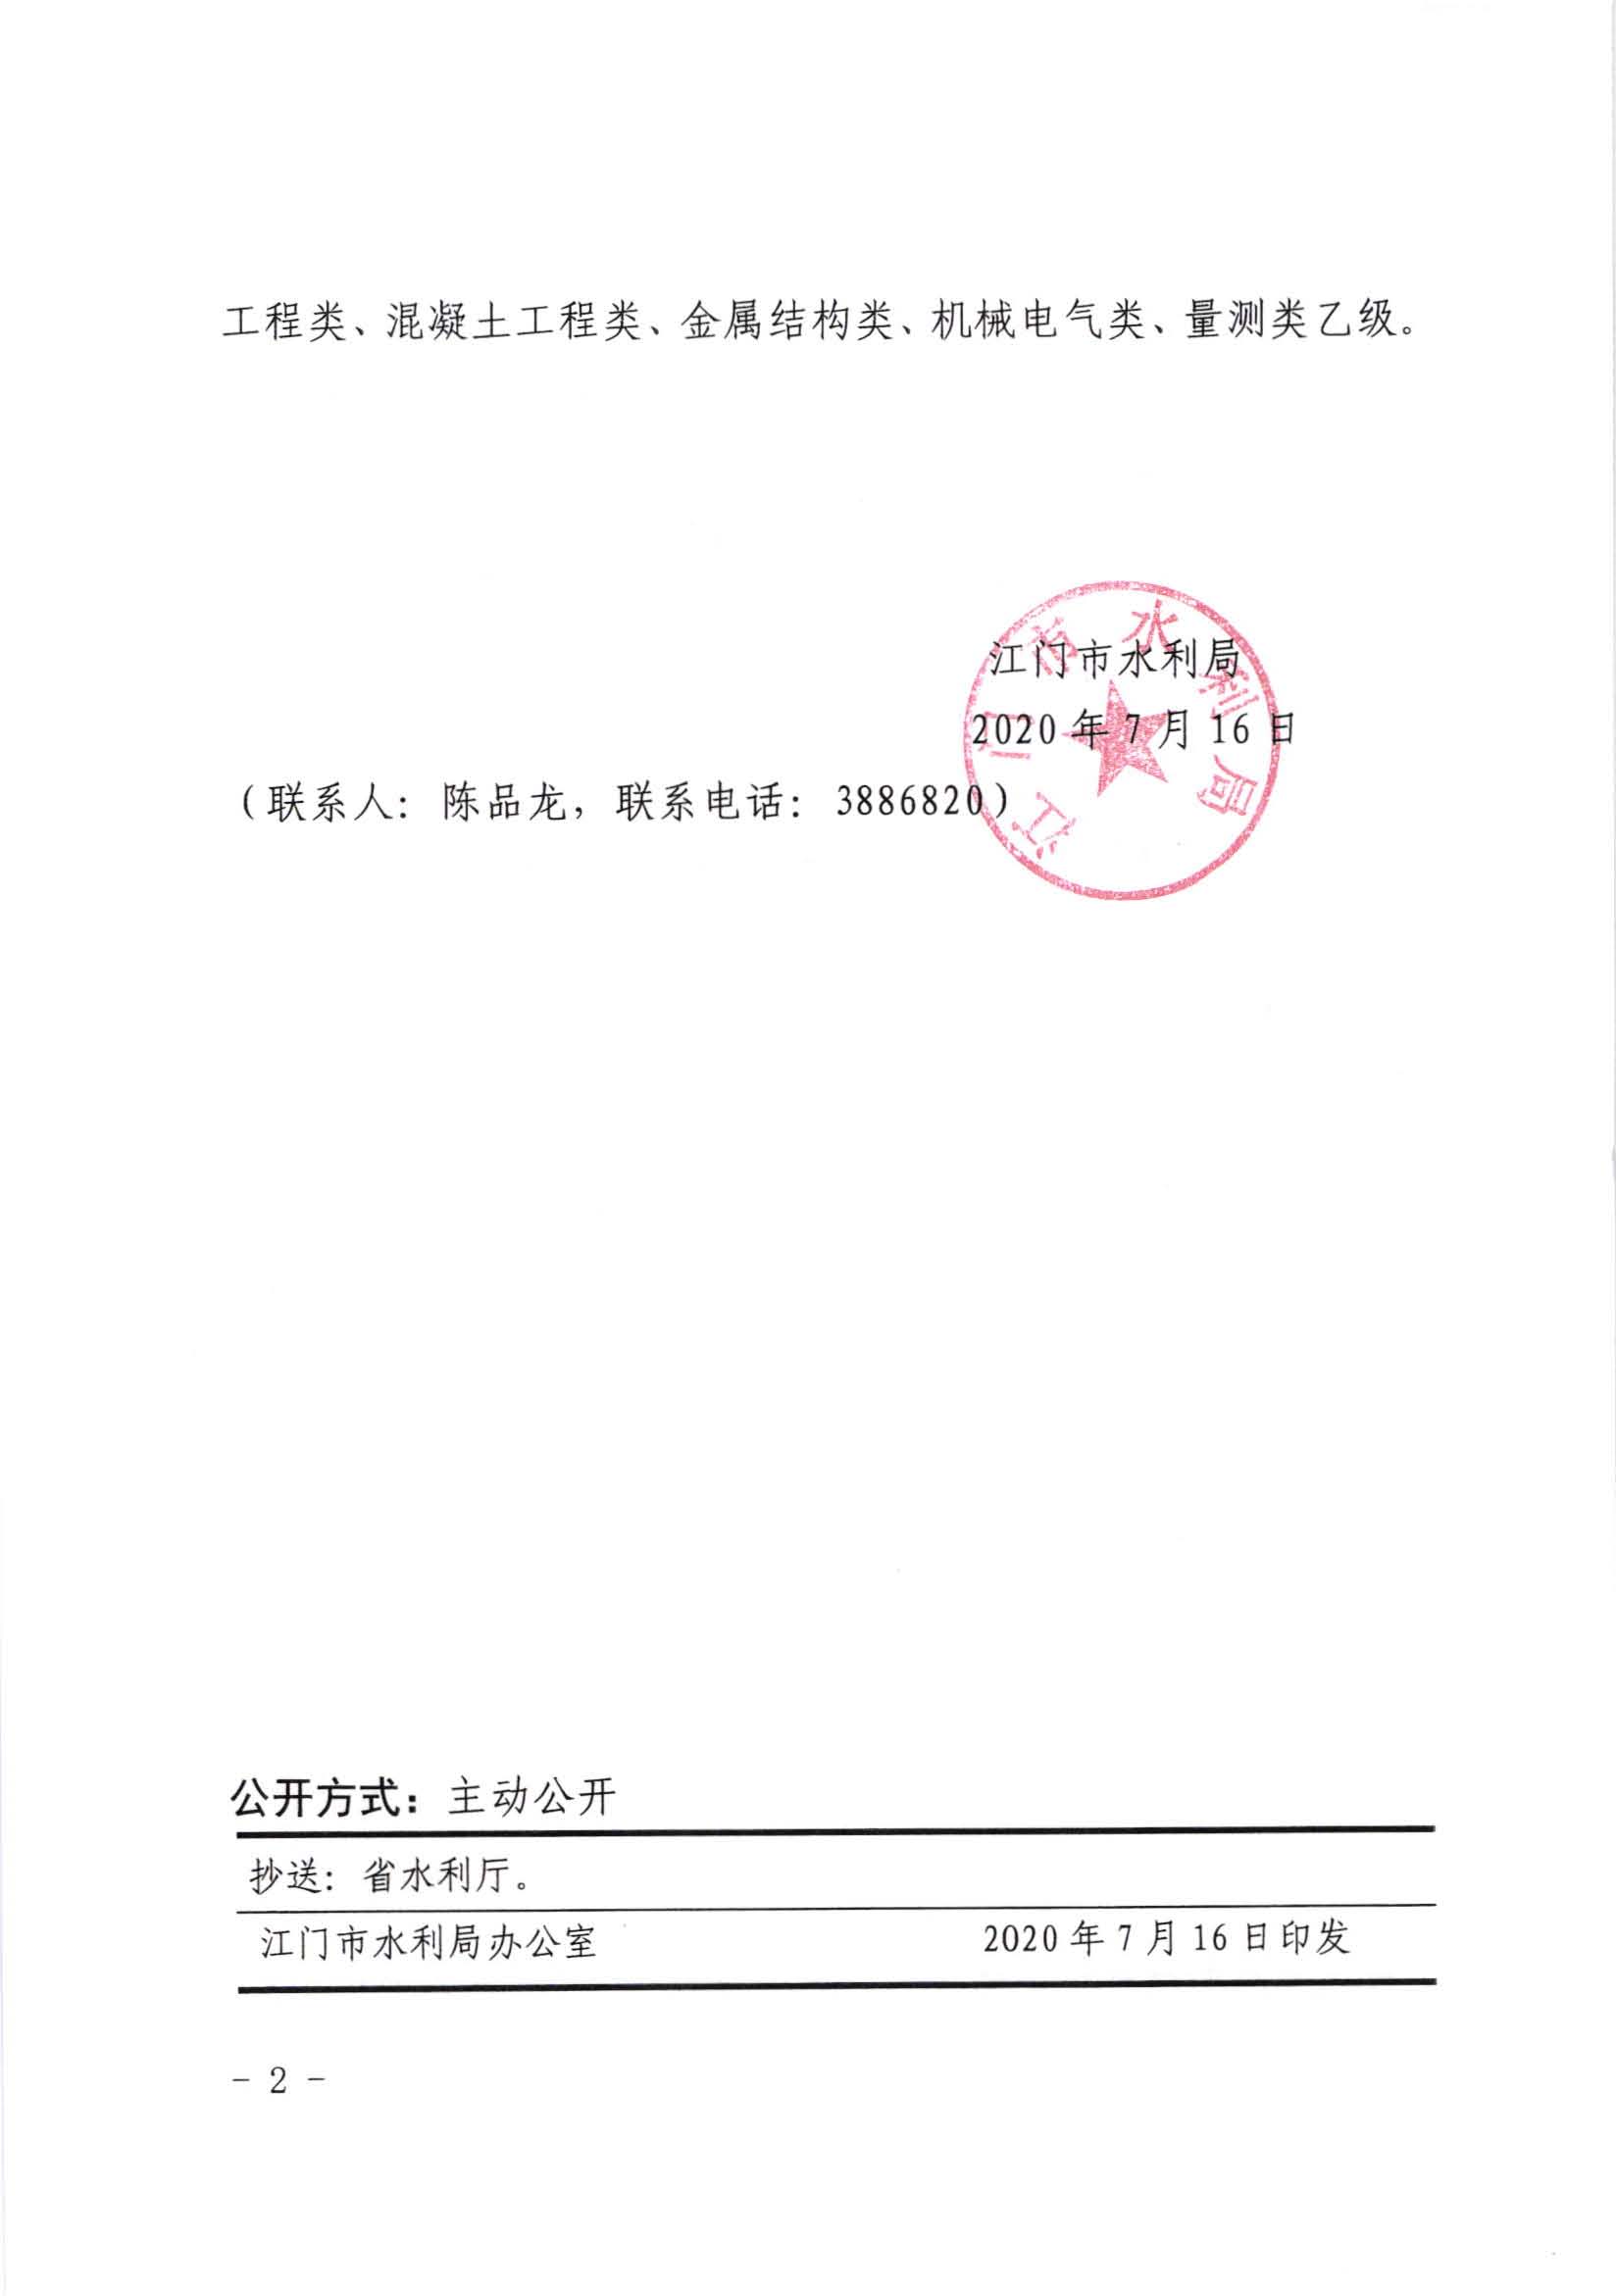 江水许准[2020]8号_江门市水利局准予行政许可决定书_页面_2.jpg